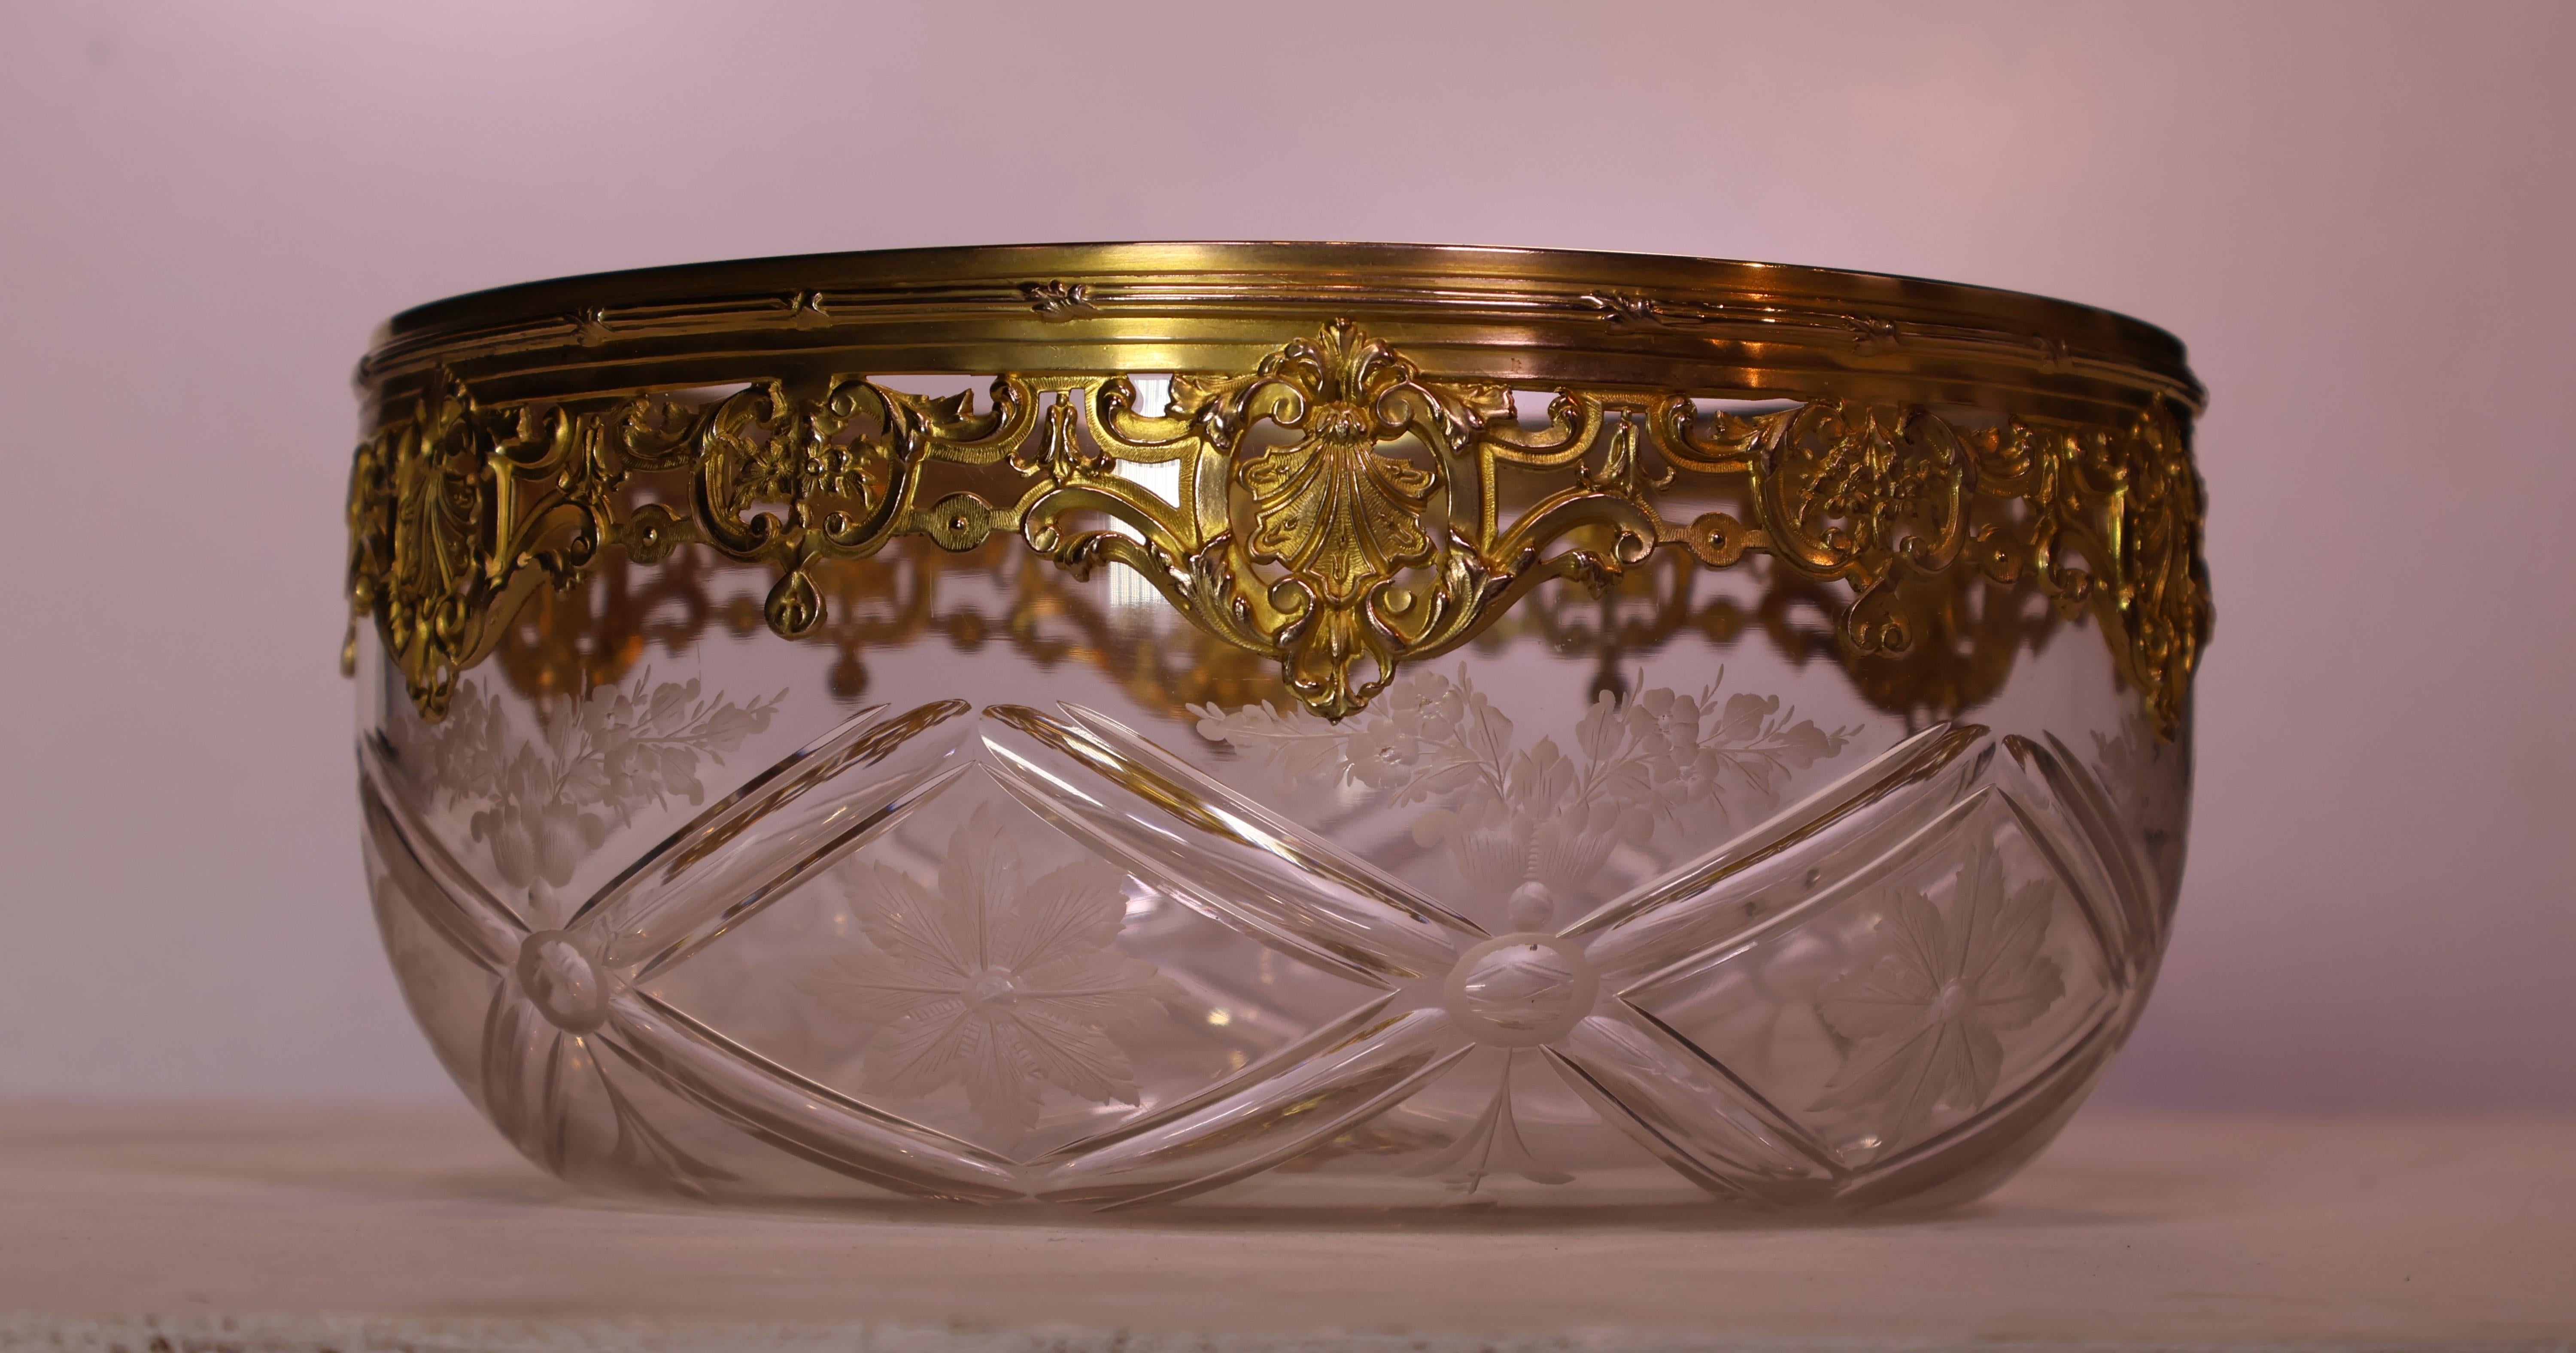  Centre de table en cristal très fin, taillé et gravé à la roue. Jante en bronze doré exquise, à chaînettes et percée. France, vers 1890.
Diamètre 8 3/4